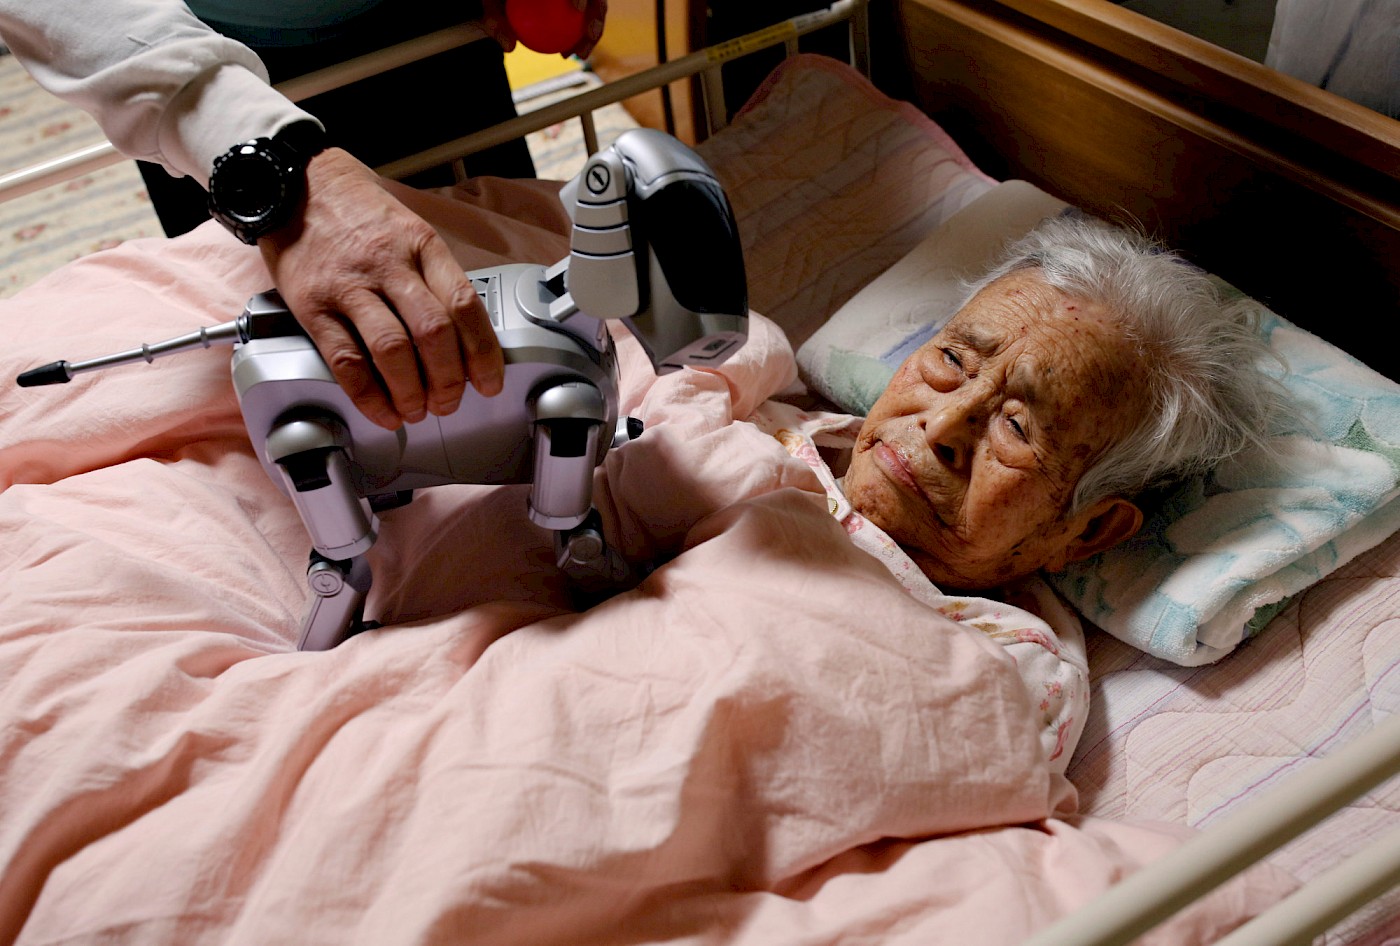 Le robot Aibo, dans une maison de retraite japonaise. [Source](https://www.japantimes.co.jp/news/2018/03/30/national/robots-making-inroads-japans-elder-care-facilities-costs-still-high/#.XM7LudHVIUE)